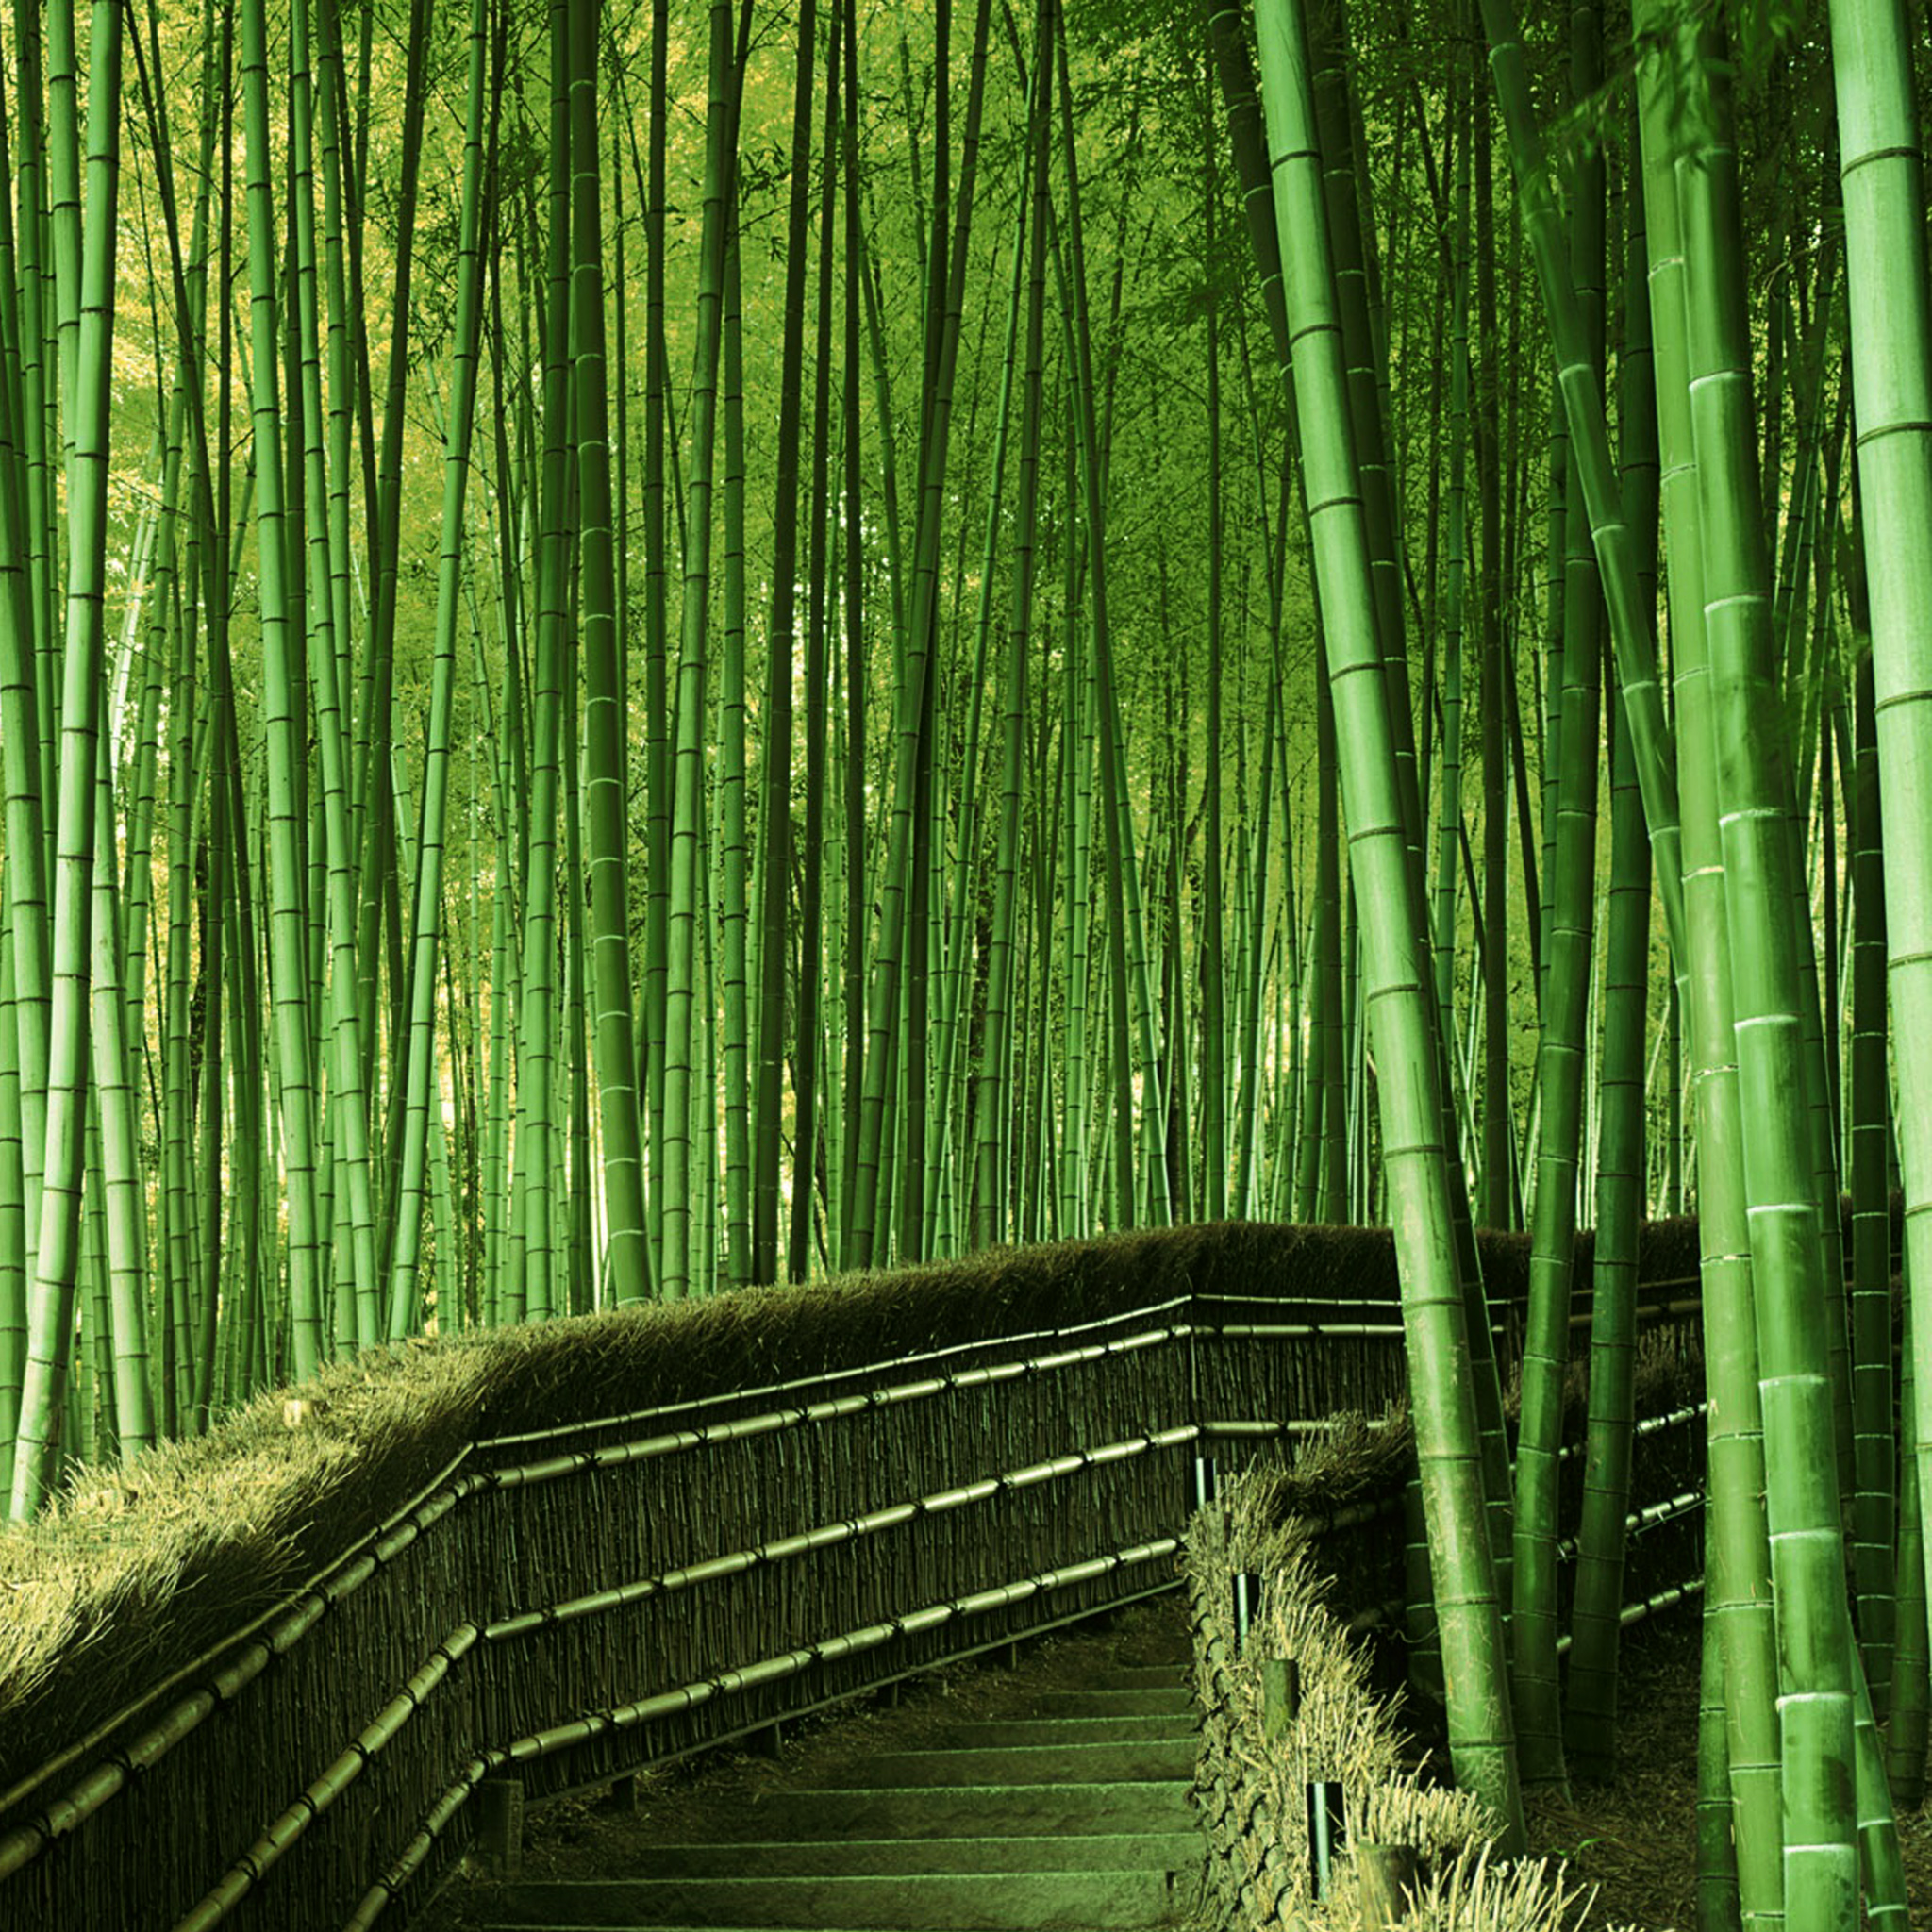 無料写真素材 自然風景 森林 竹 竹林 緑色 グリーン画像素材なら 無料 フリー写真素材のフリーフォト